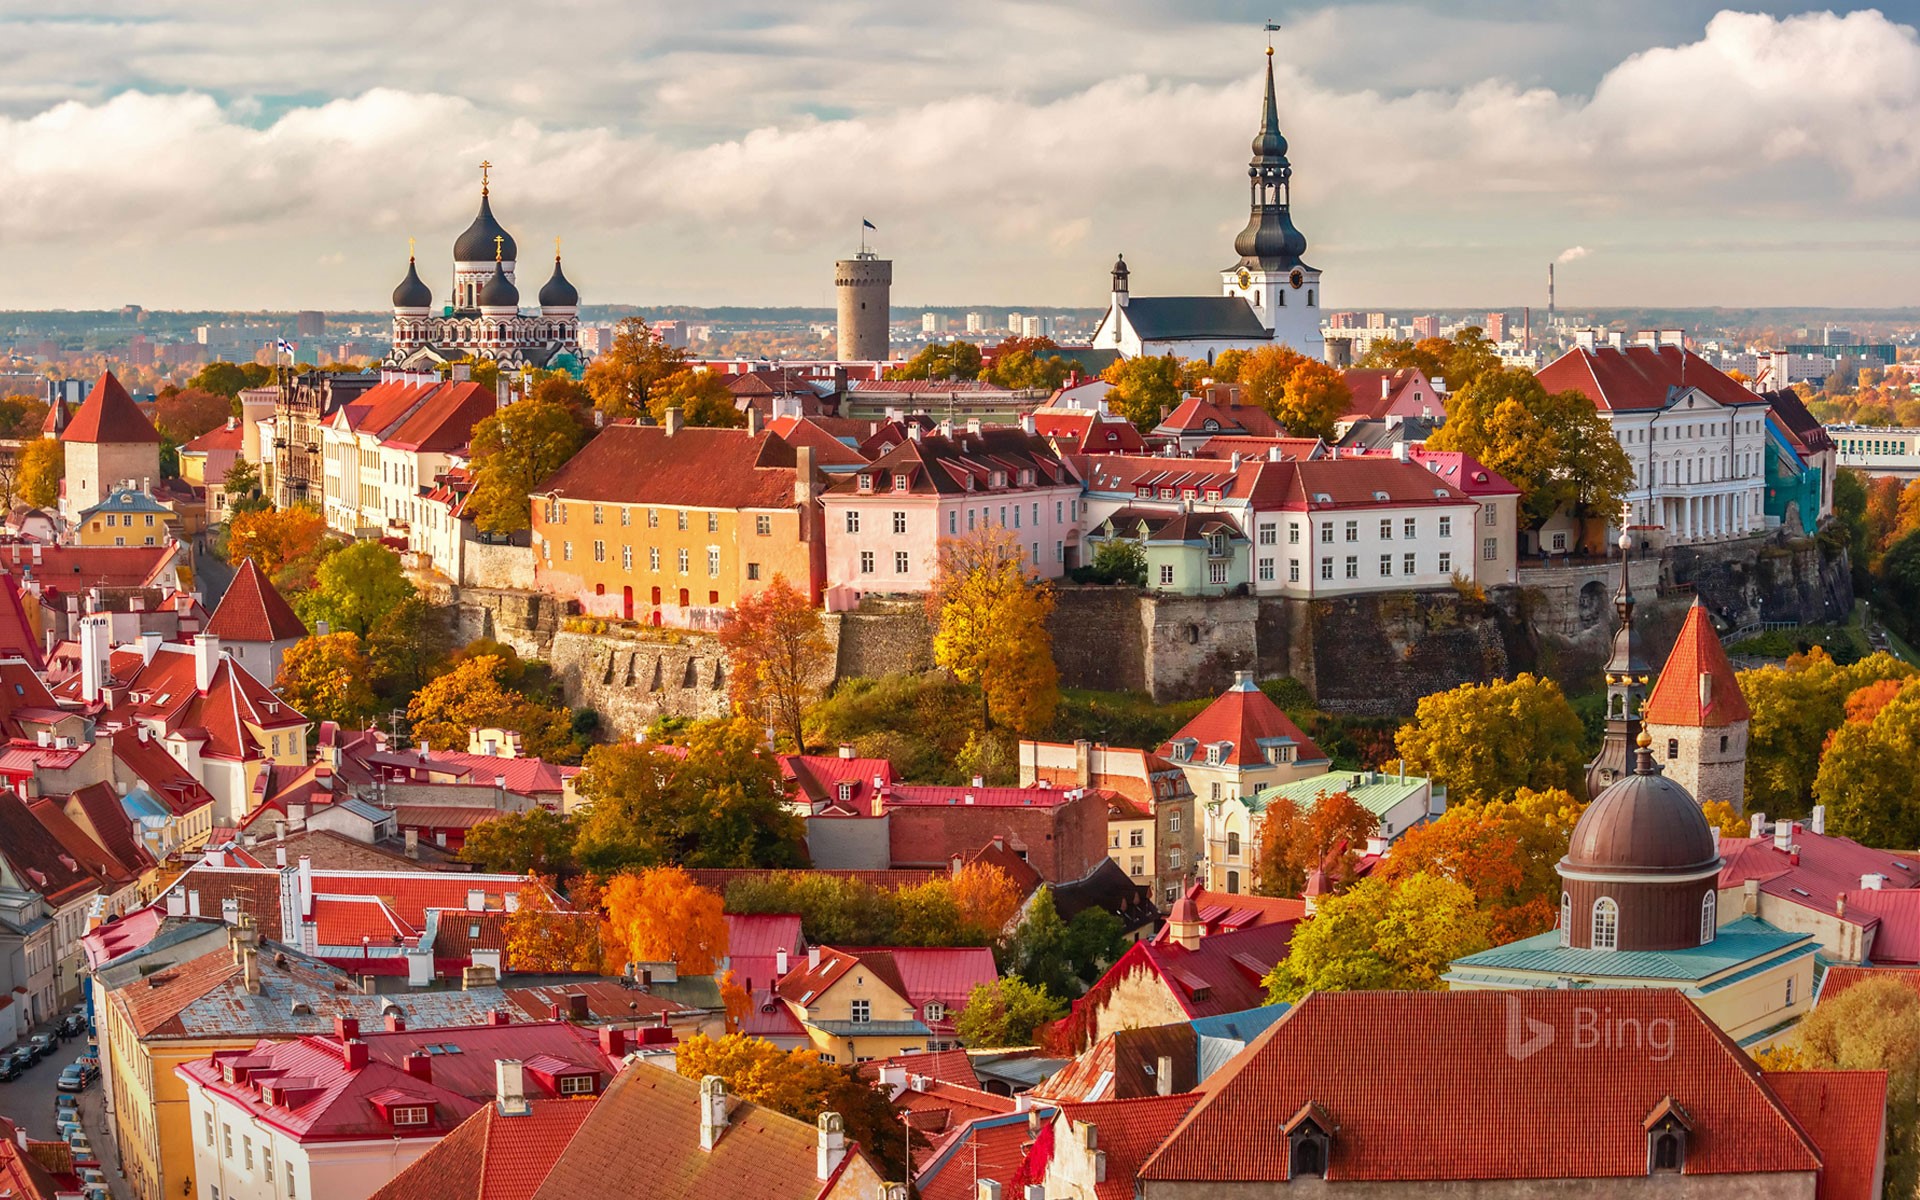 Old Town of Tallinn, Estonia